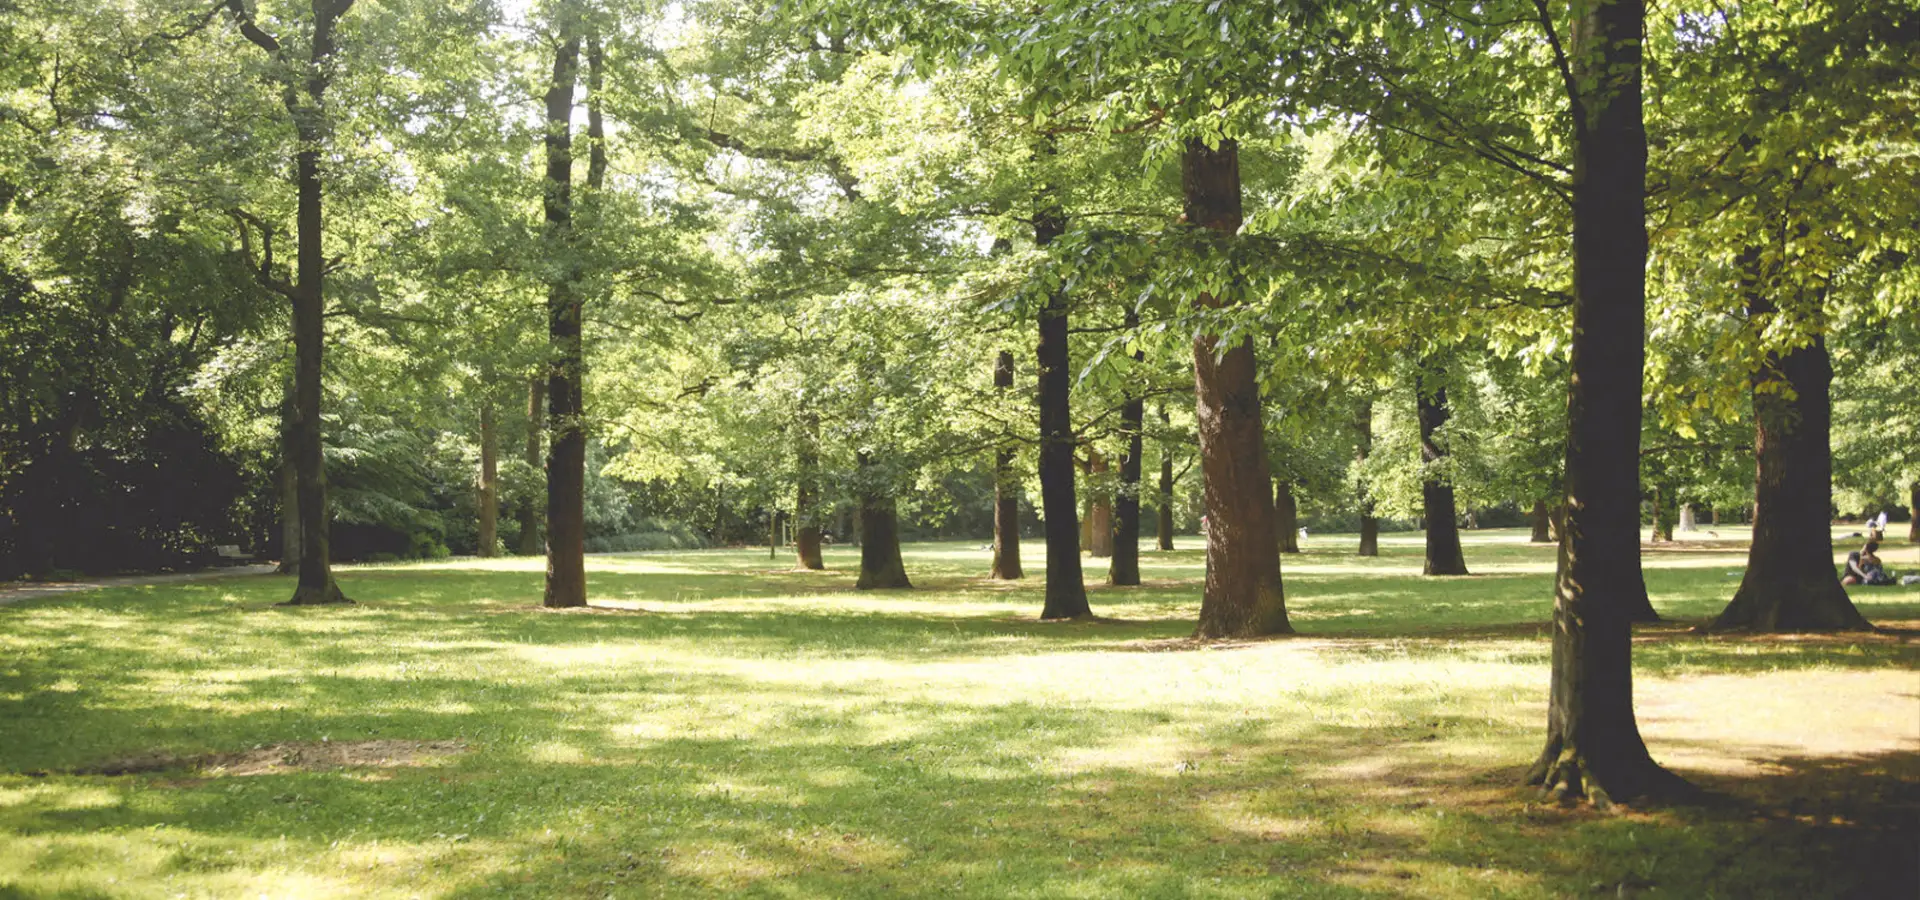 Sonniger Park mit vielen grünen Bäumen und einem Rasen.